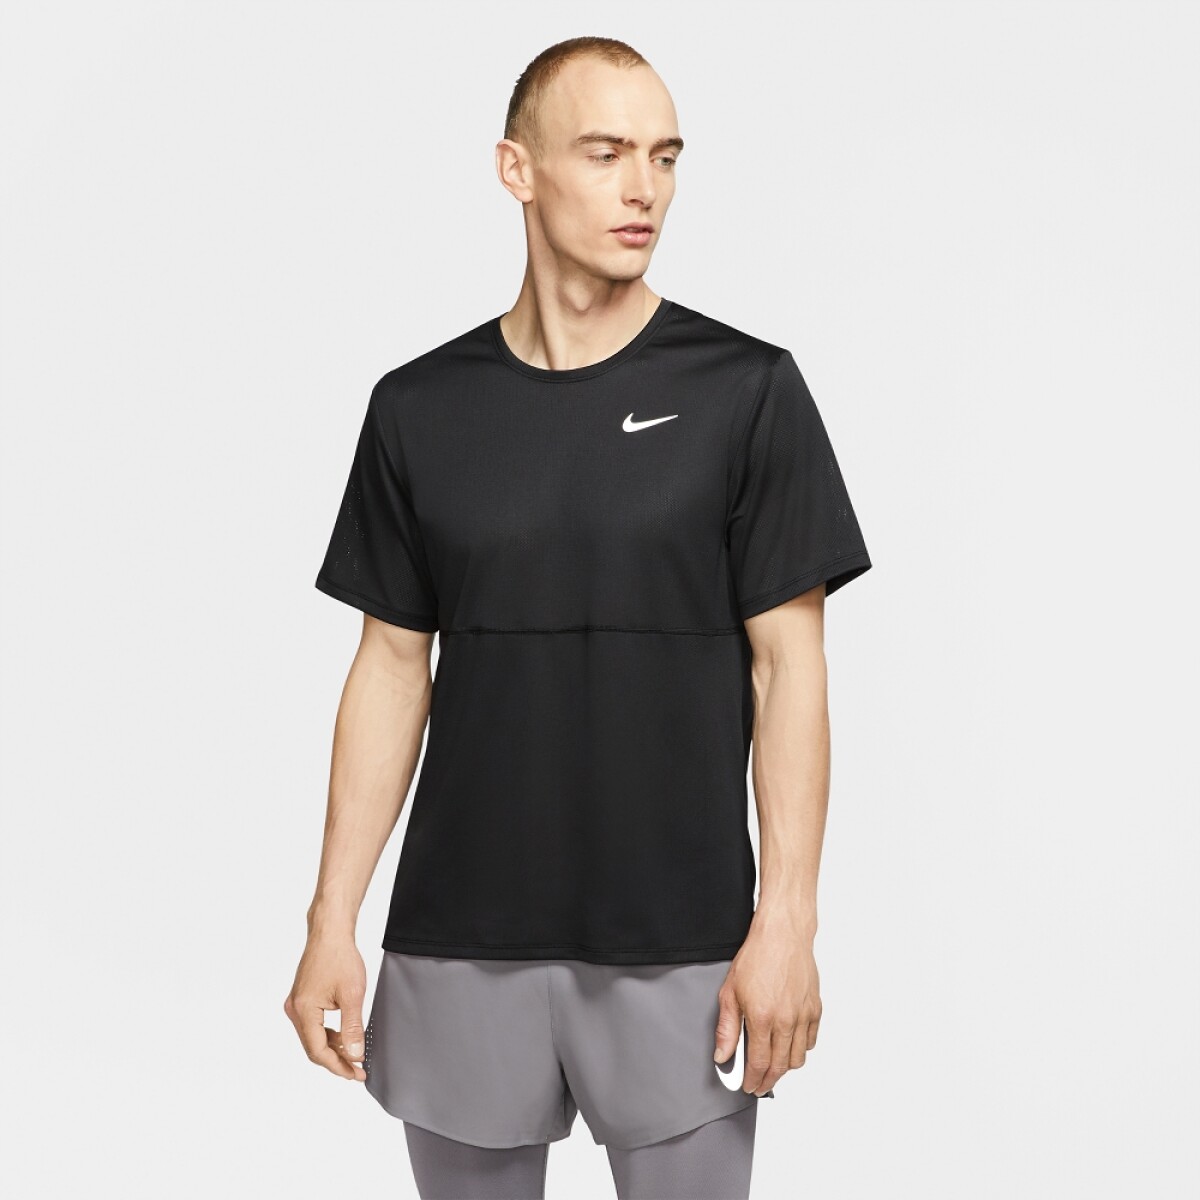 Remera Nike Dri-fit Run 